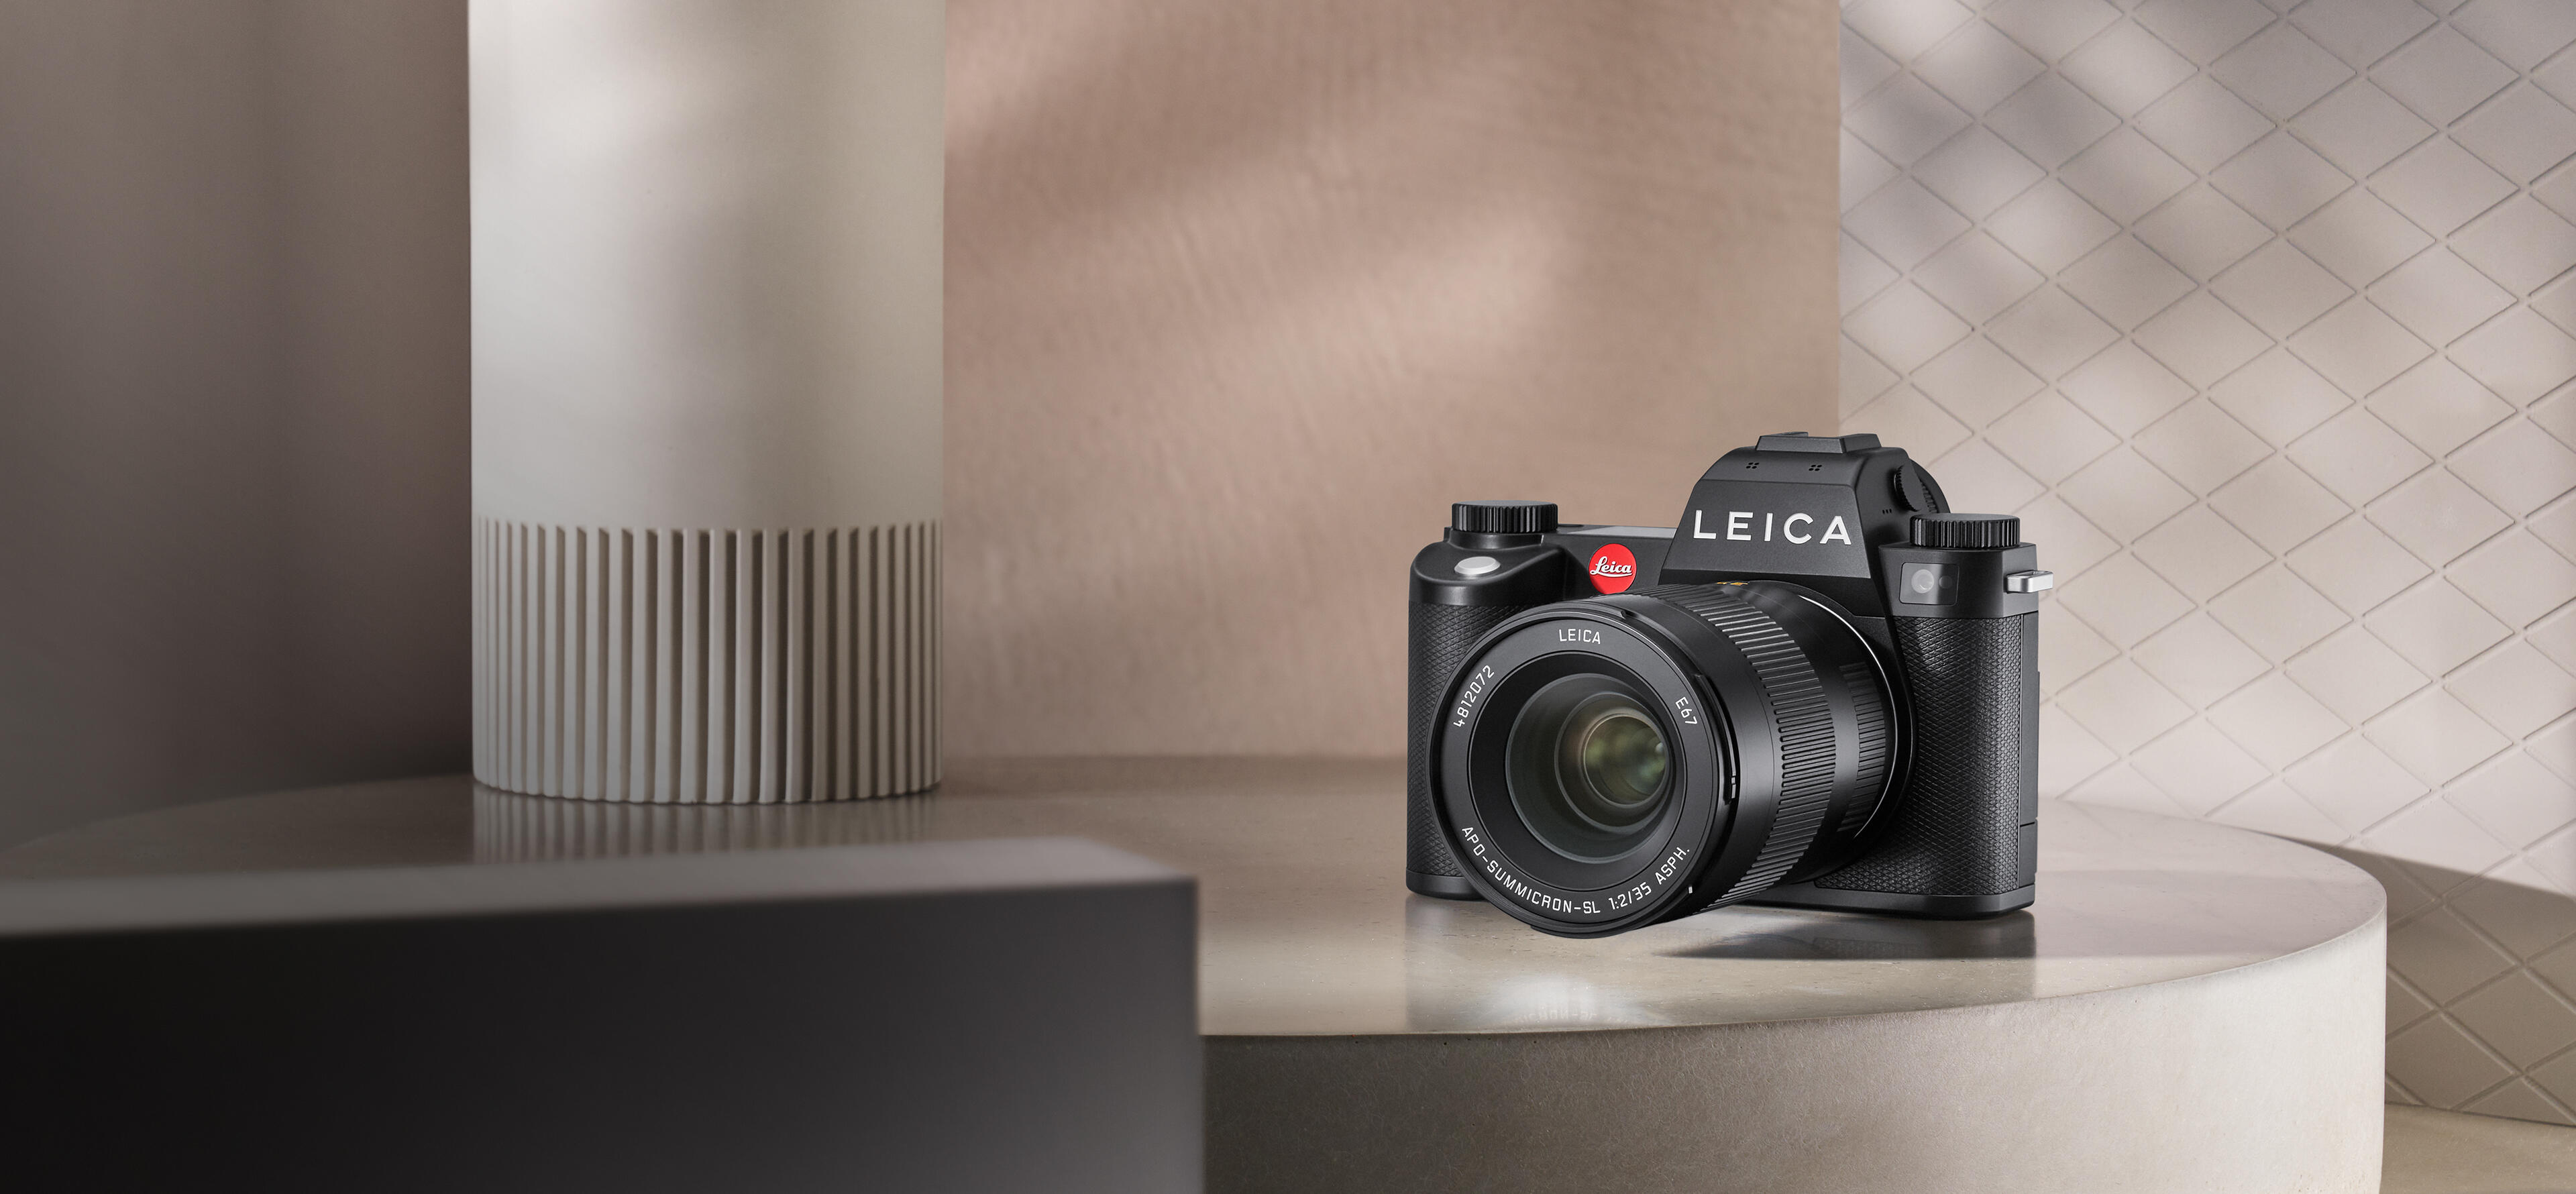 Leica Camera Wetzlar – Official